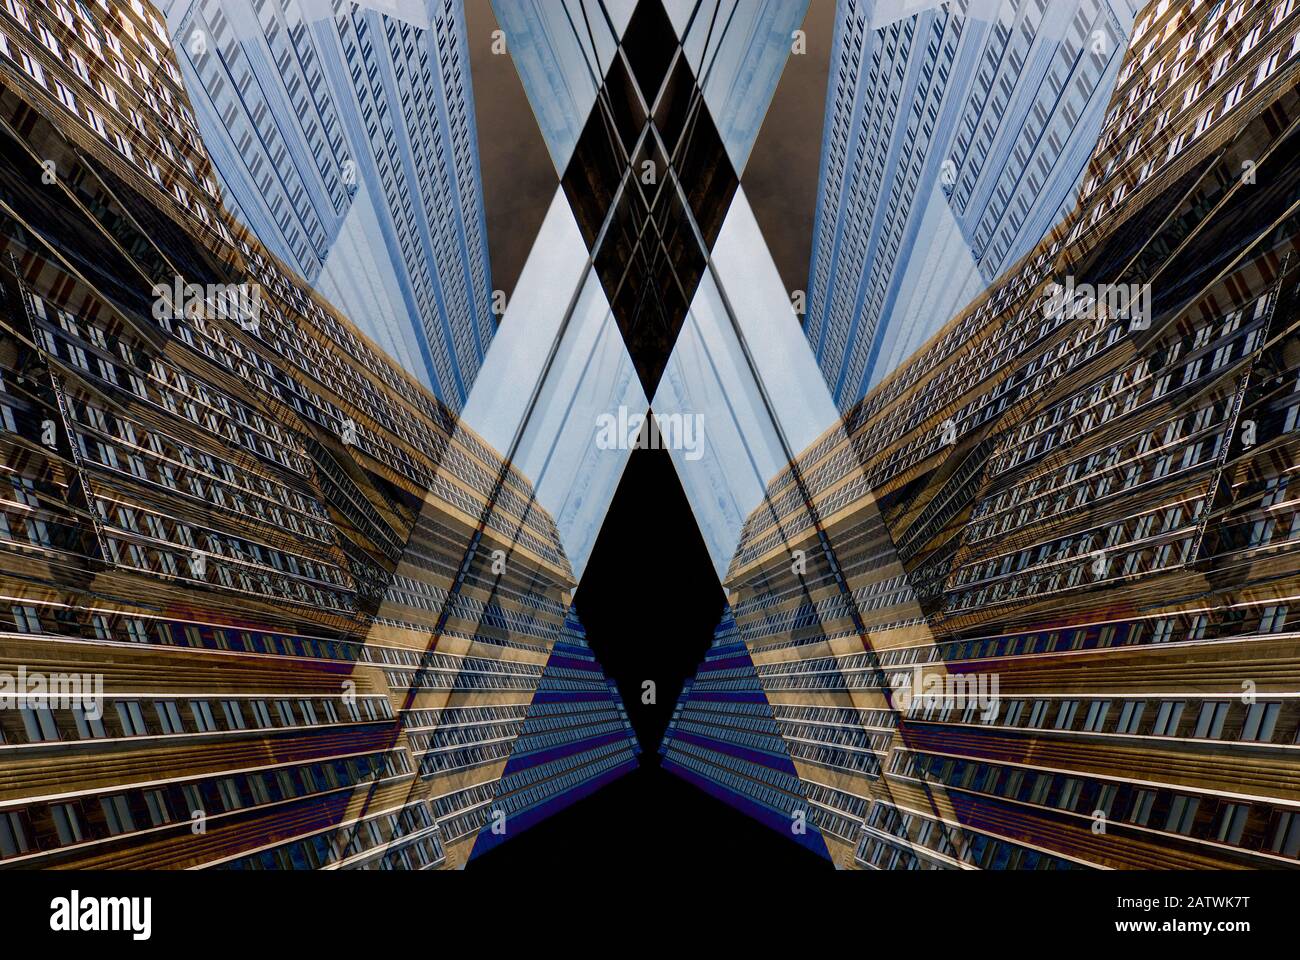 Astratto Geometrico digitale composito Della Facciata dell'Empire state Building a New York City, Stati Uniti d'America. Foto Stock